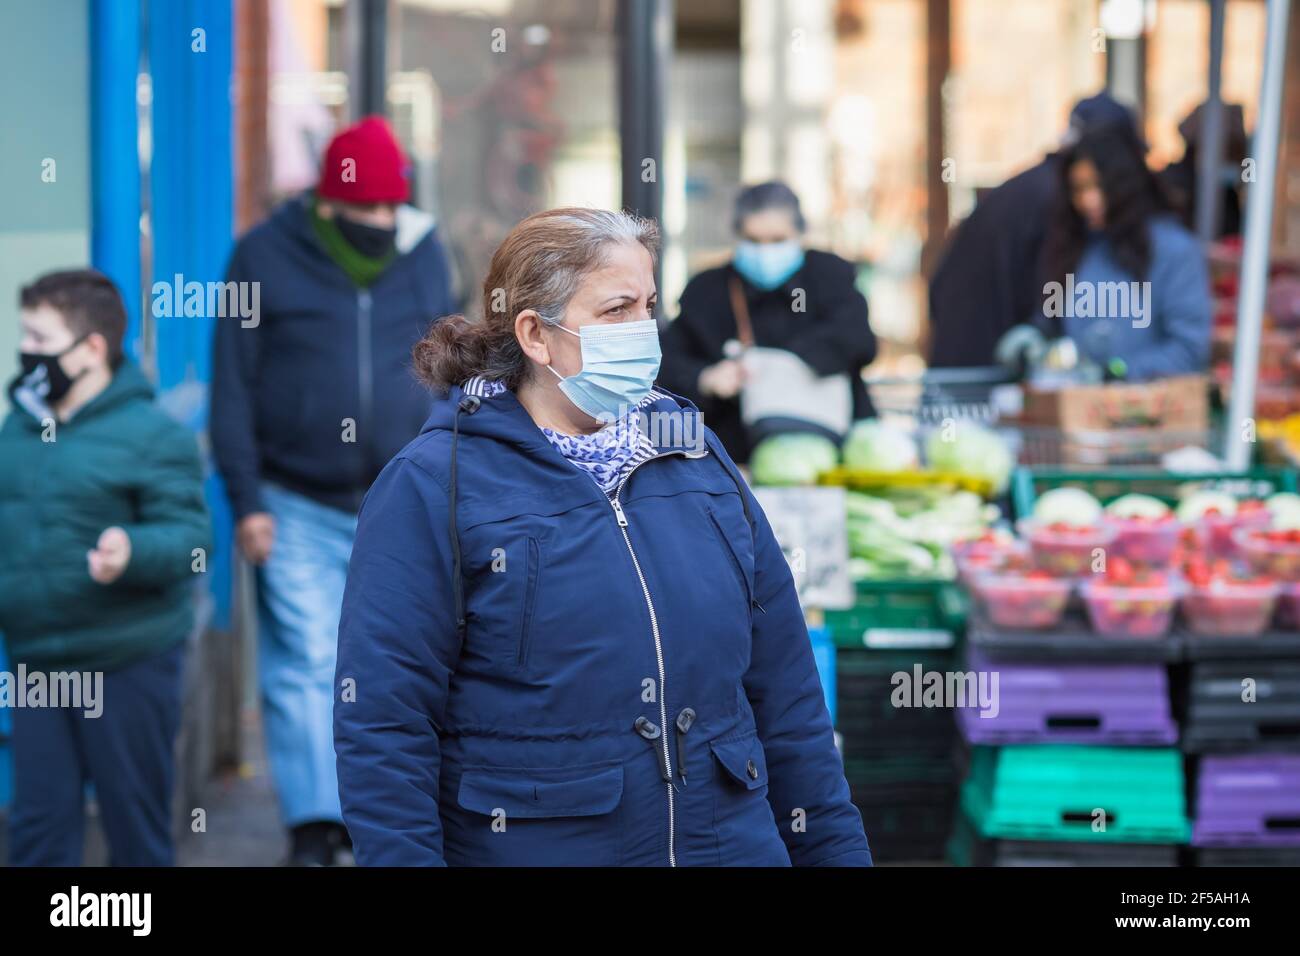 Londres, Royaume-Uni - 5 février, 2021 - une femme âgée portant un masque facial protecteur passant par un marché de produits extérieurs sur la rue Wood Green High Street Banque D'Images